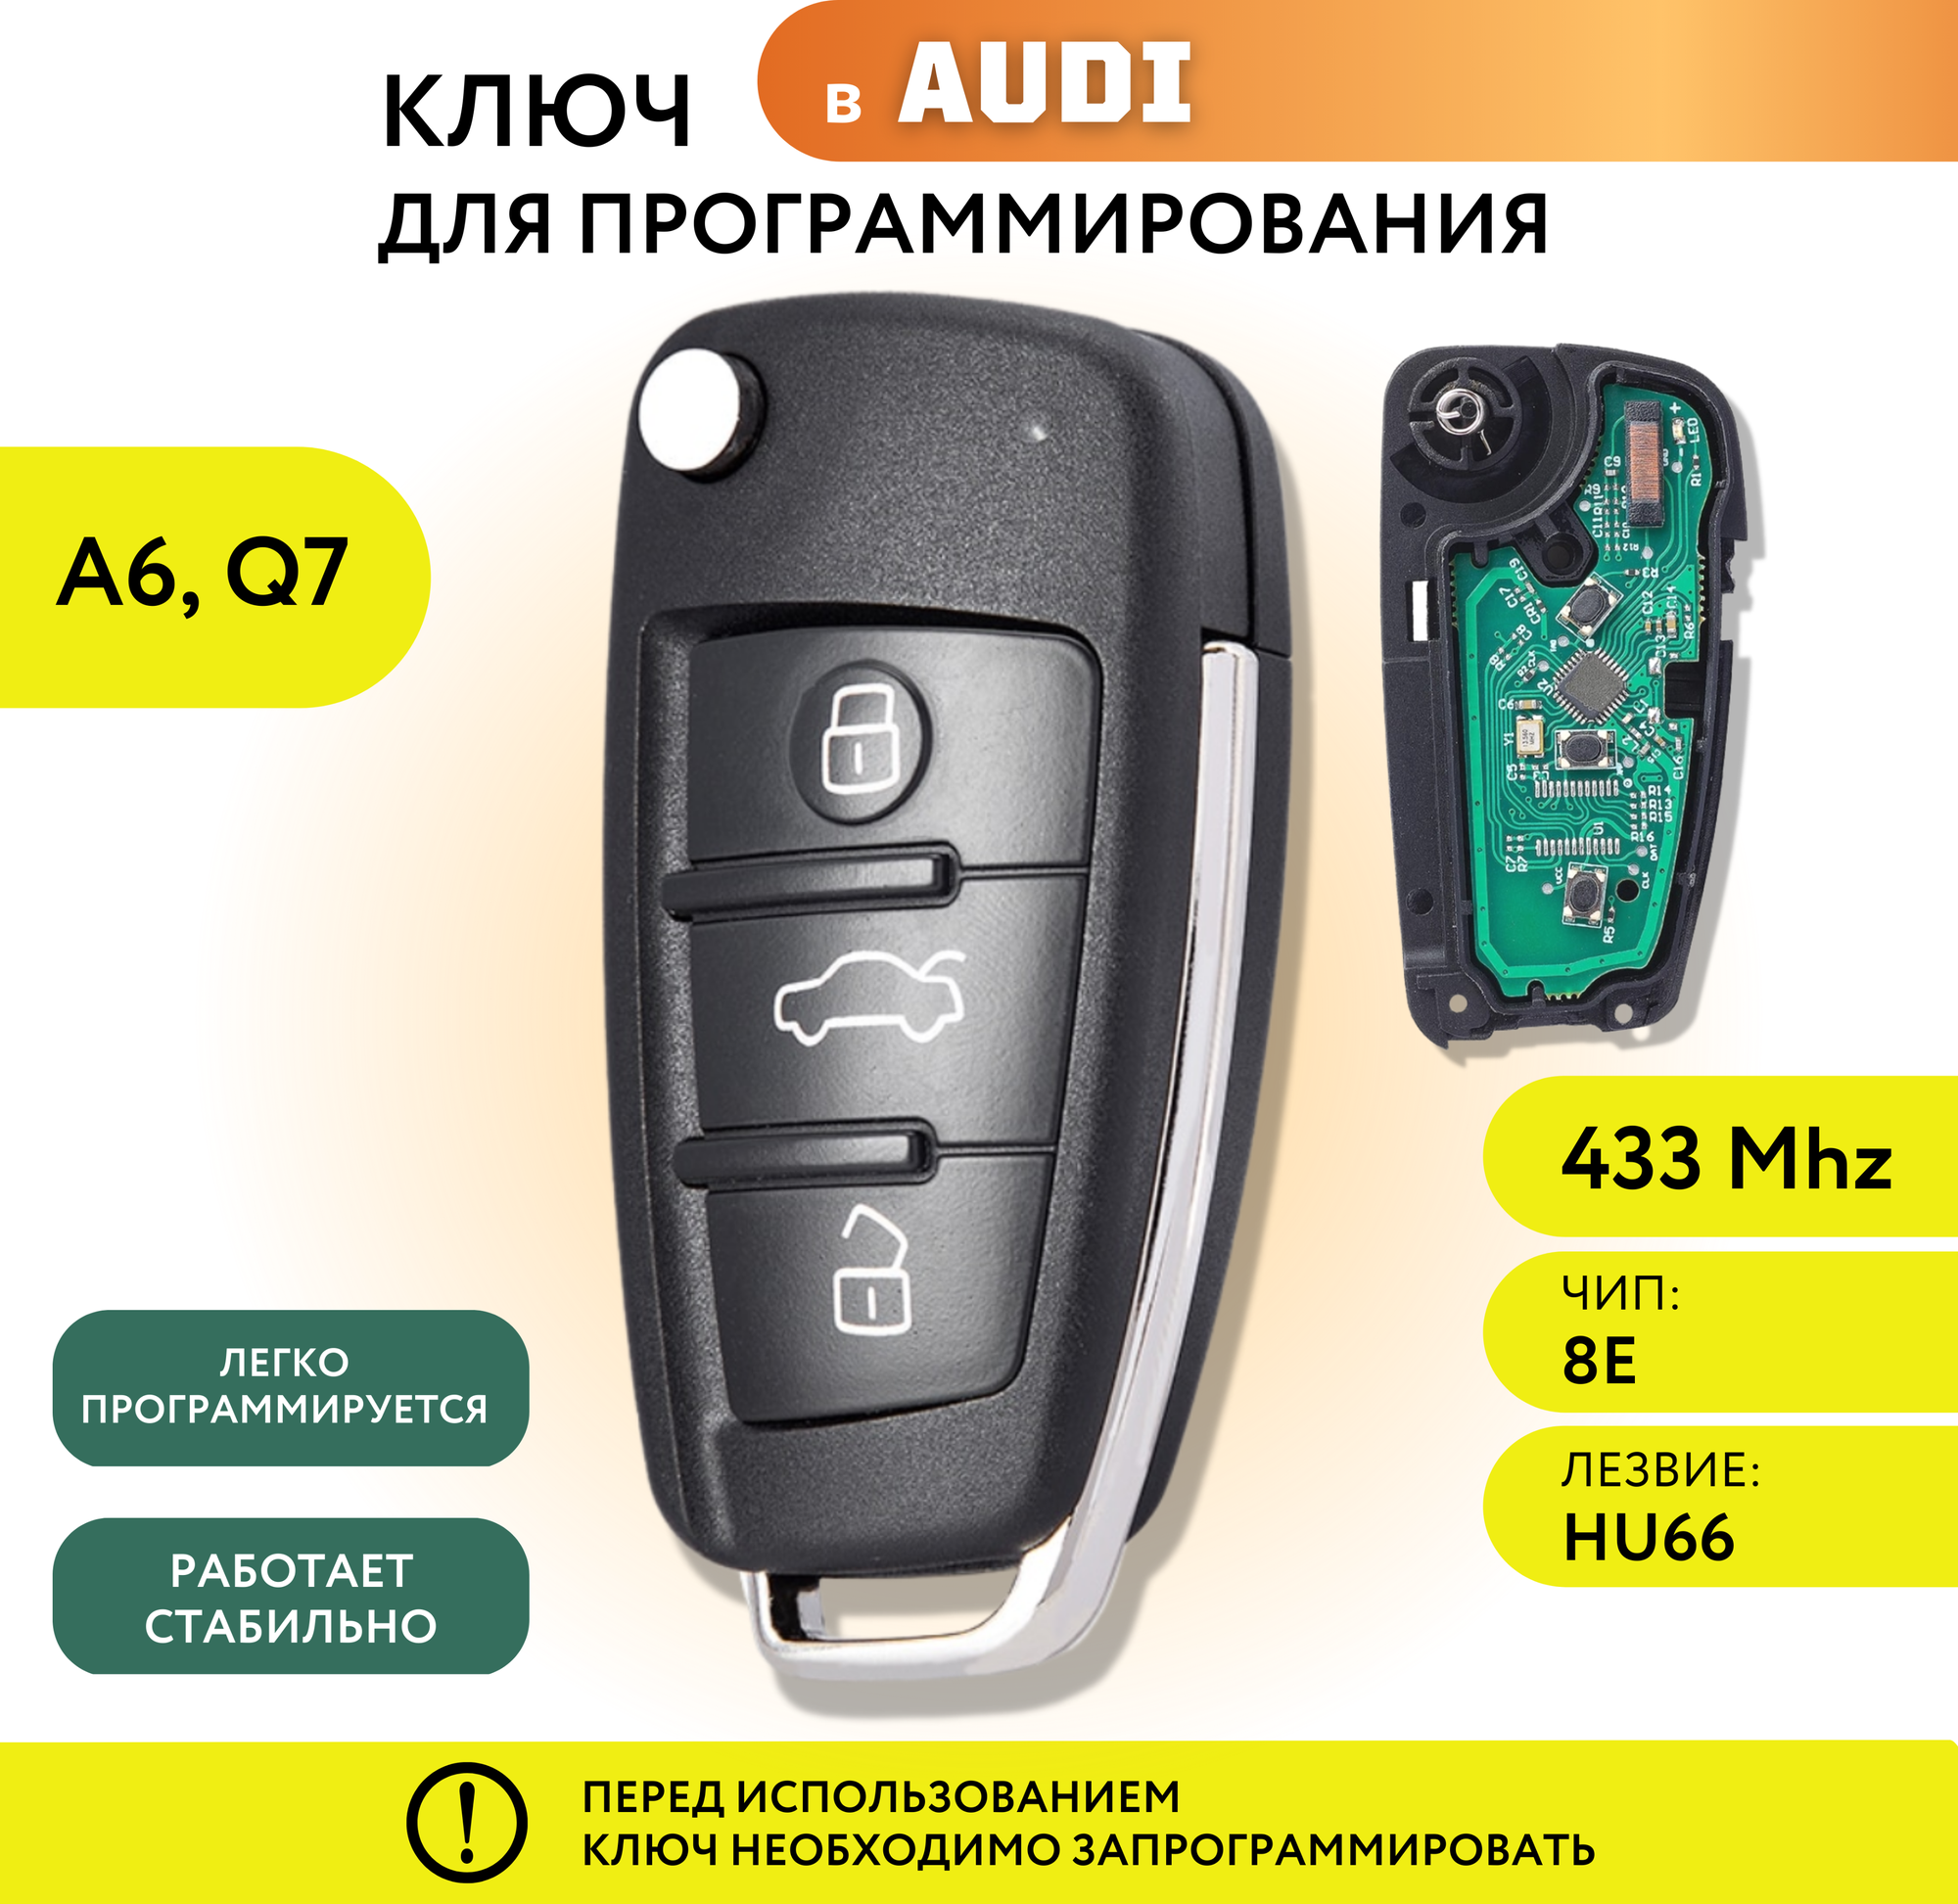 Ключ зажигания для Ауди A6, Q7, выкидной ключ для Audi c платой и чипом, лезвие HU66